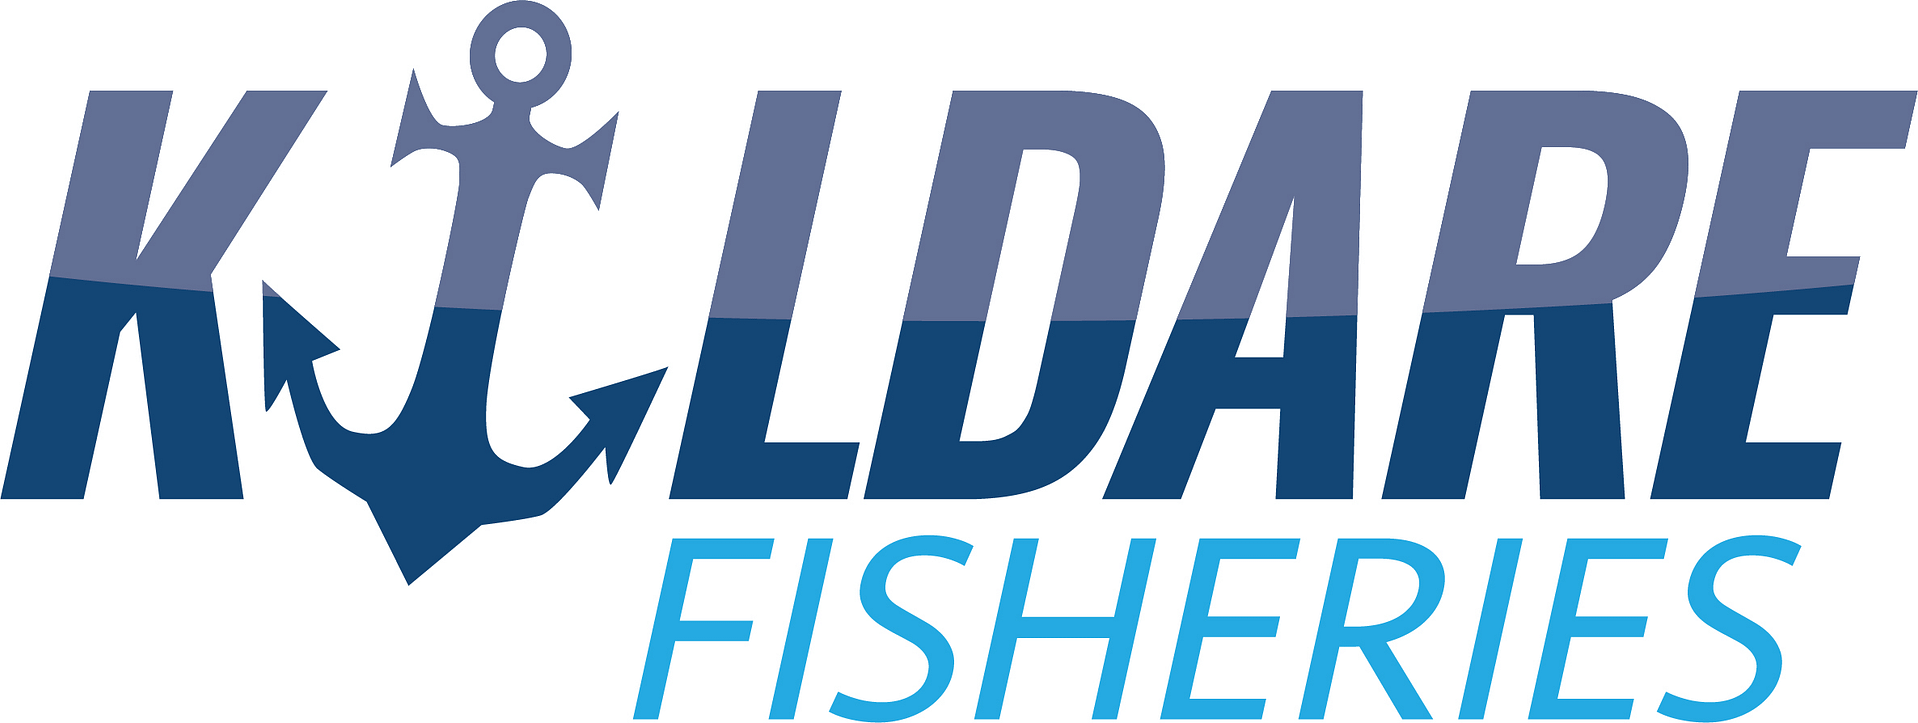 Kildare Fisheries